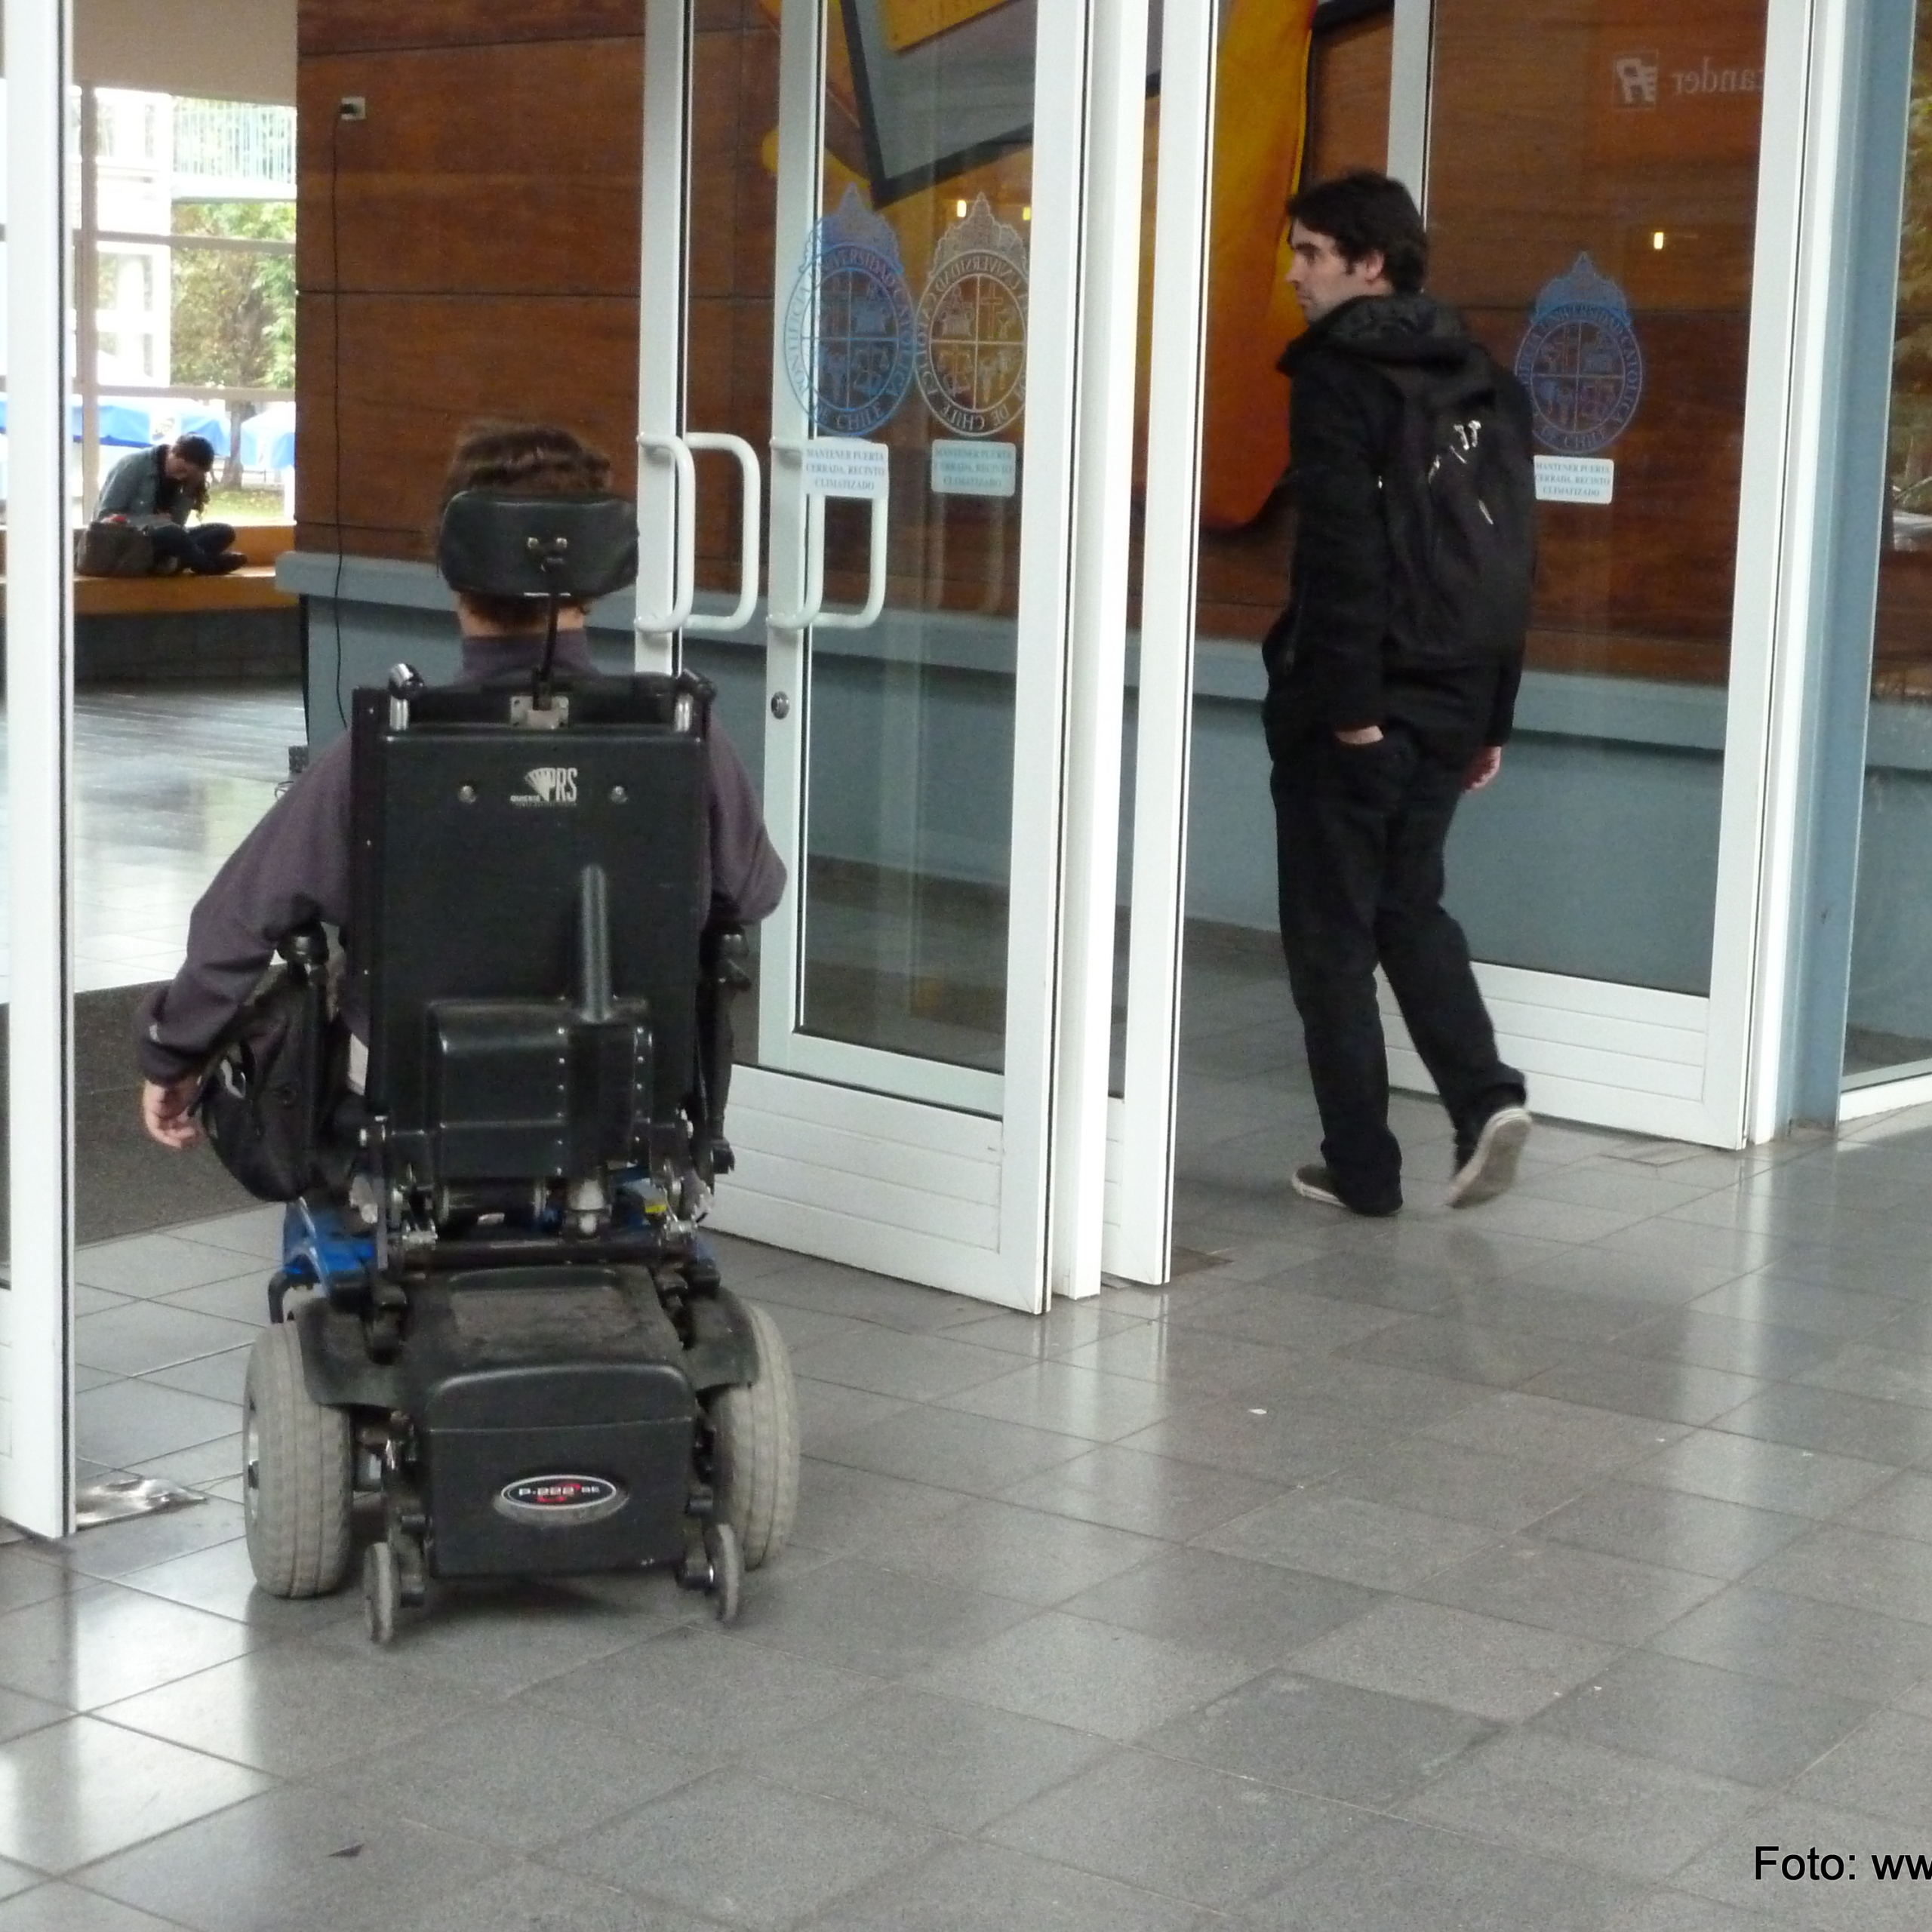 una persona en silla de ruedas y otra caminando cruzan el acceso de una edificación